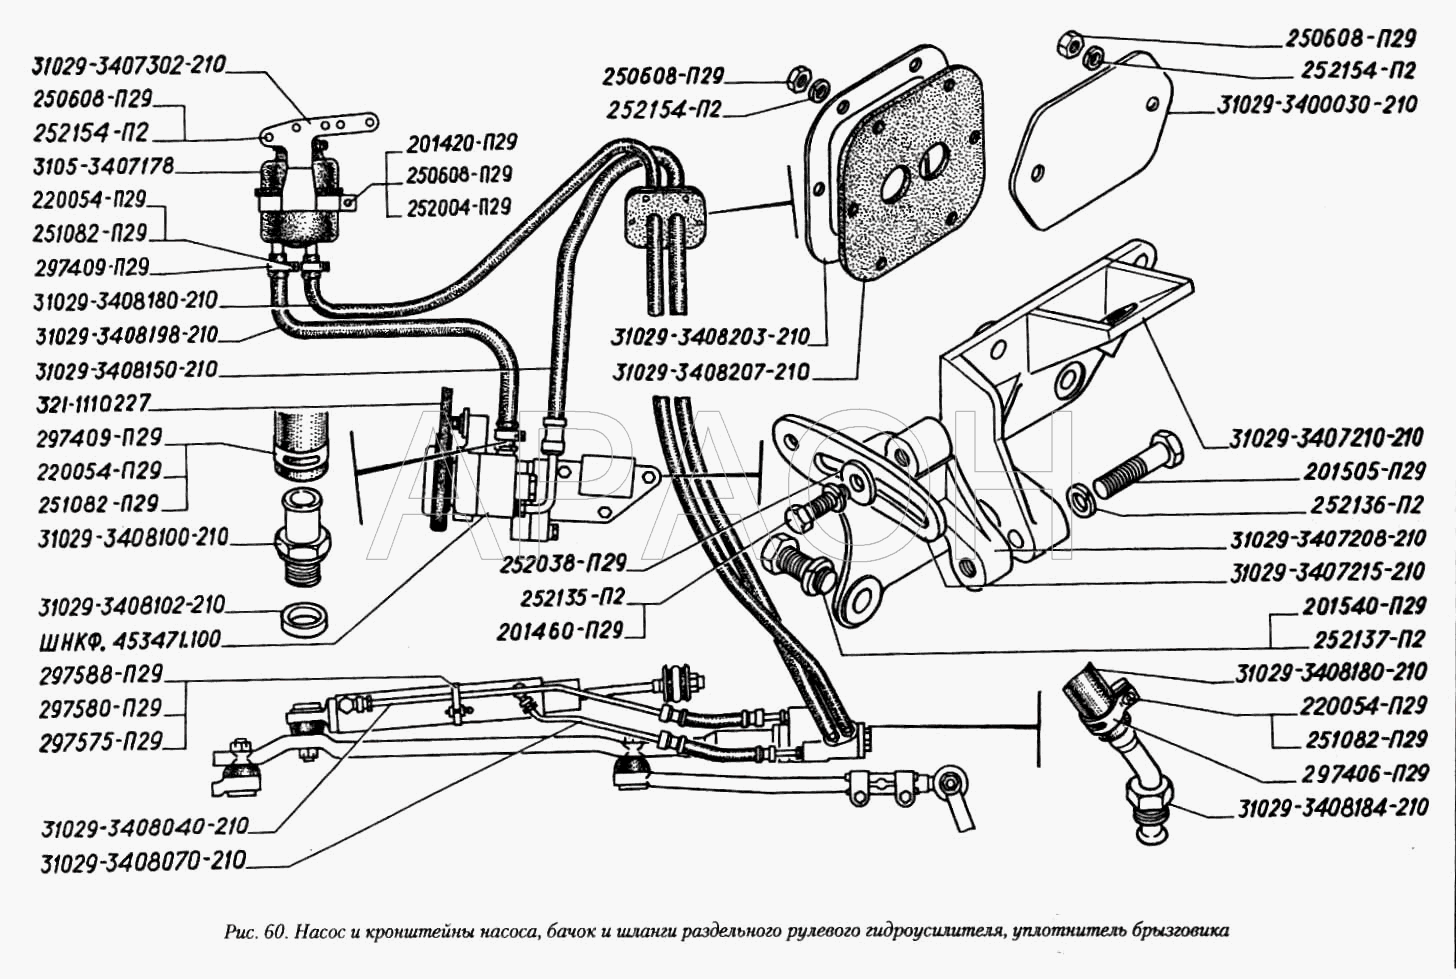 Насос и кронштейны насоса, бачок и шланги раздельного рулевого гидроусилителя, уплотнитель брызговика ГАЗ-3110